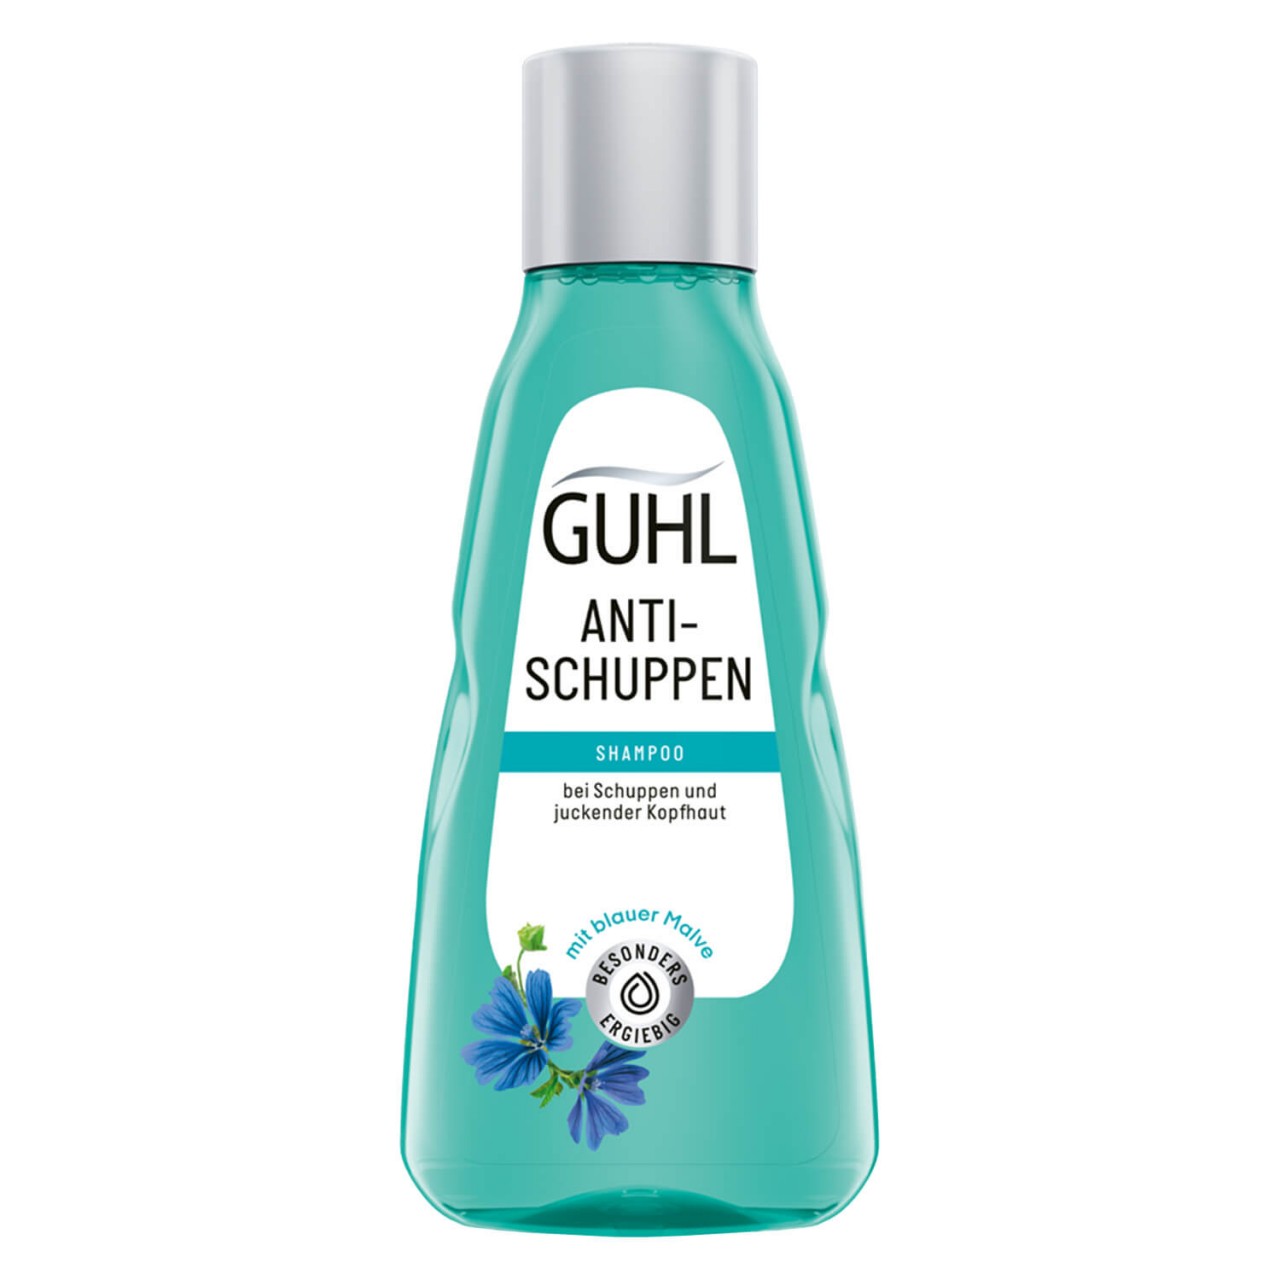 GUHL - ANTI-SCHUPPEN Shampoo von GUHL